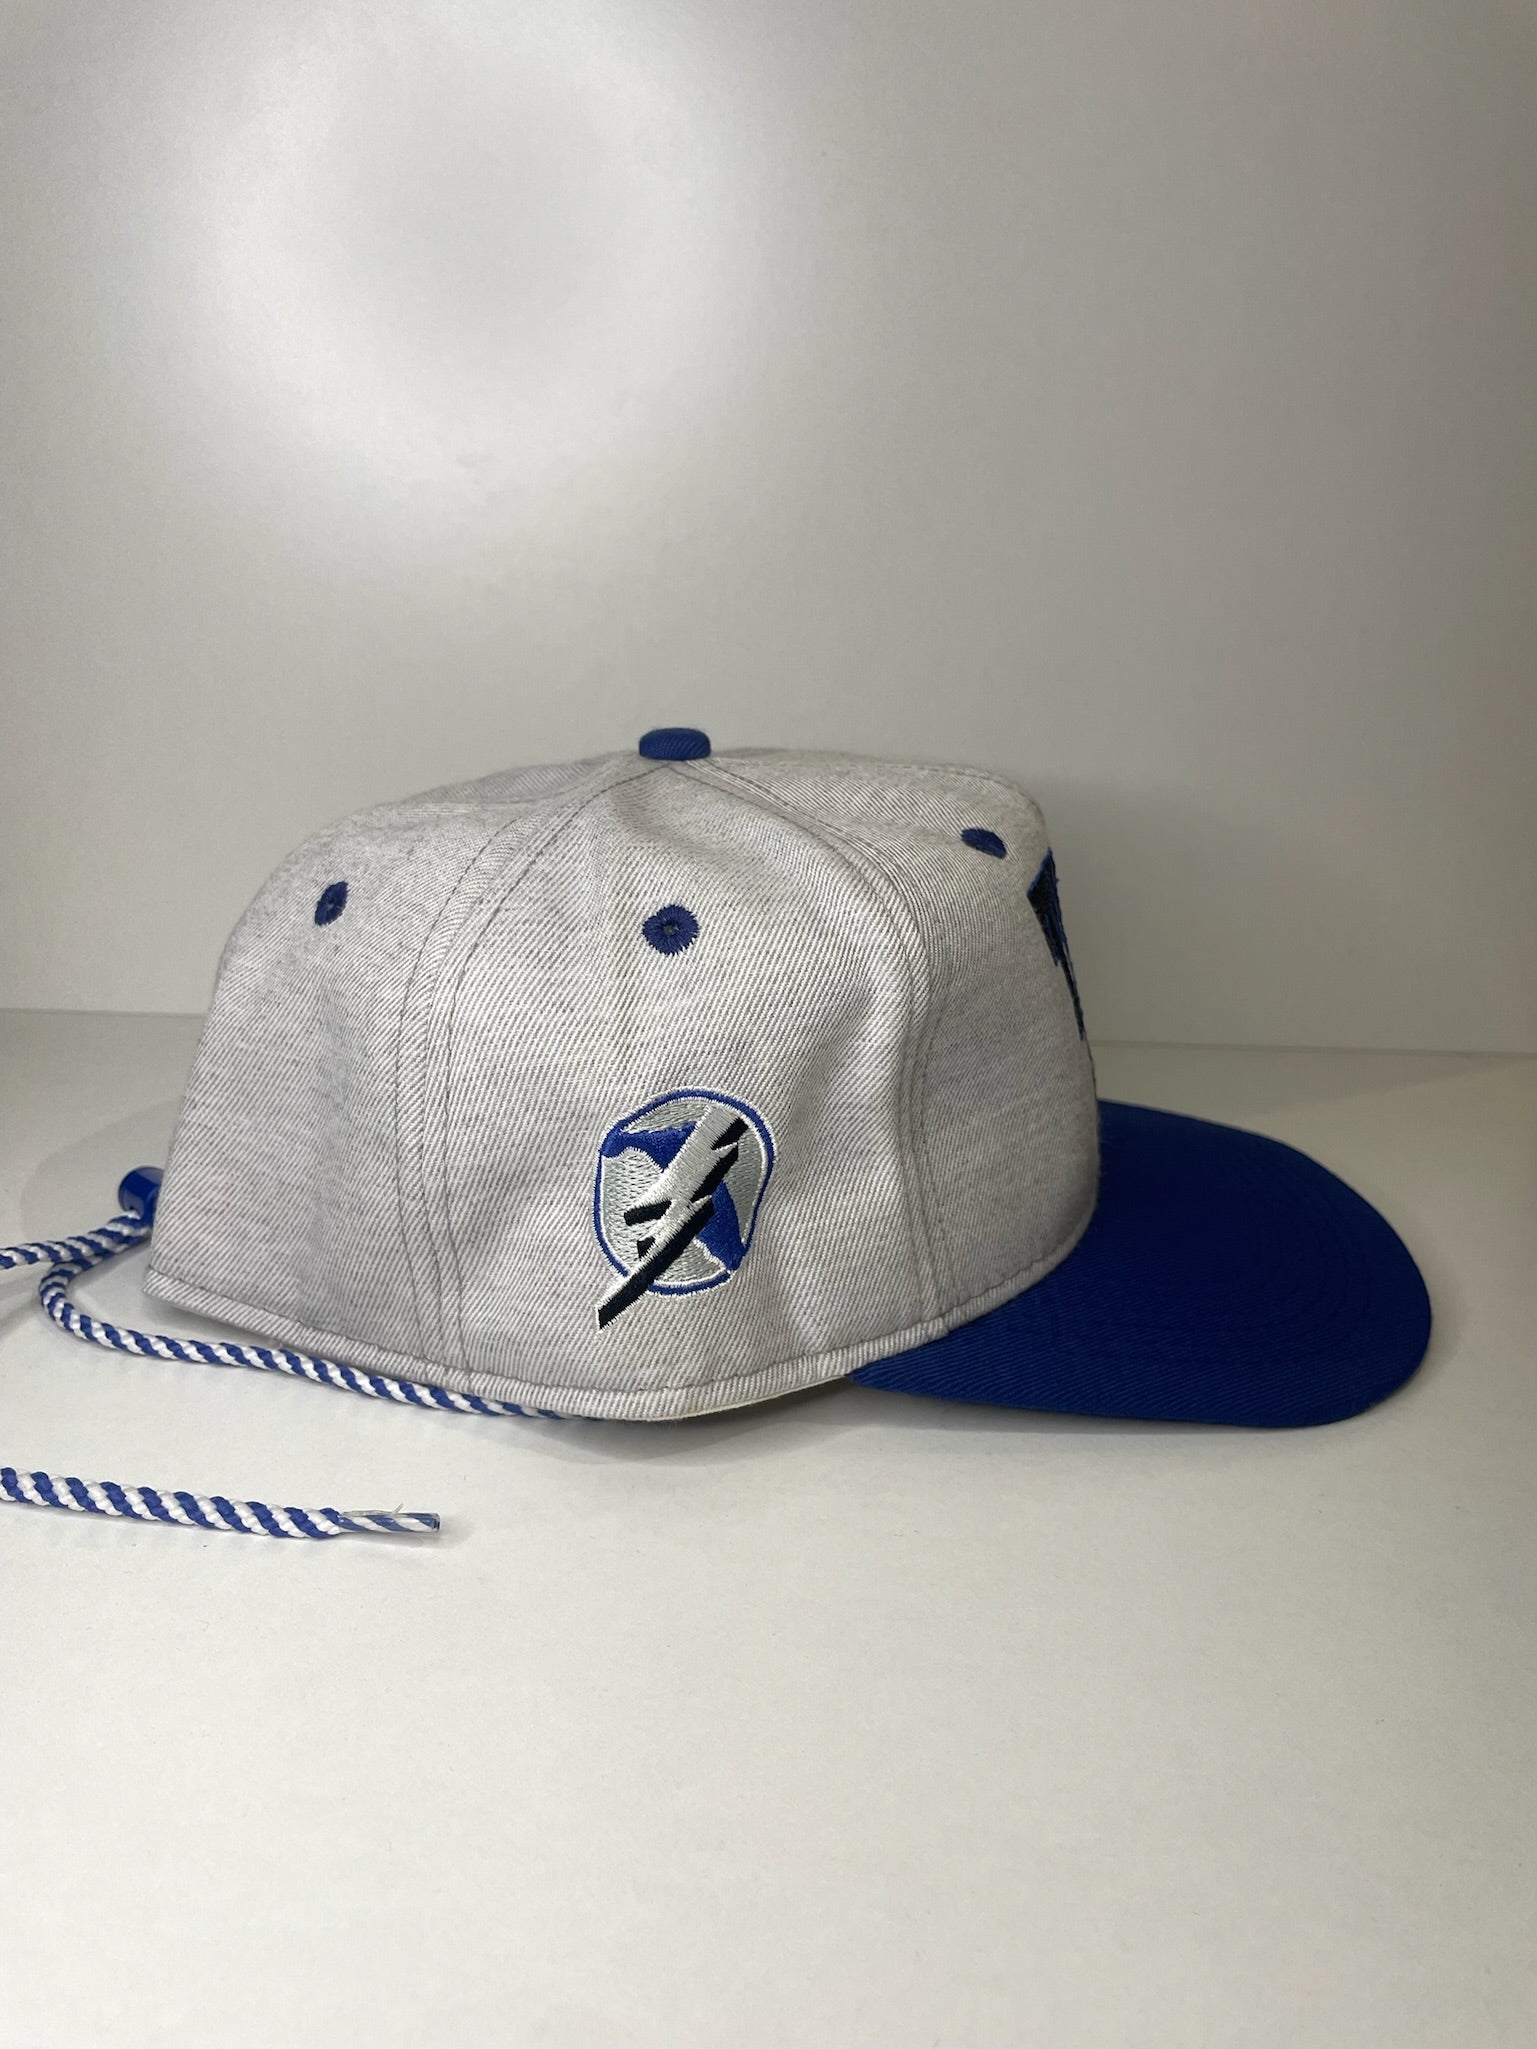 Vintage Tampa Bay Lightning Hat Cap Snap Back NHL 90s